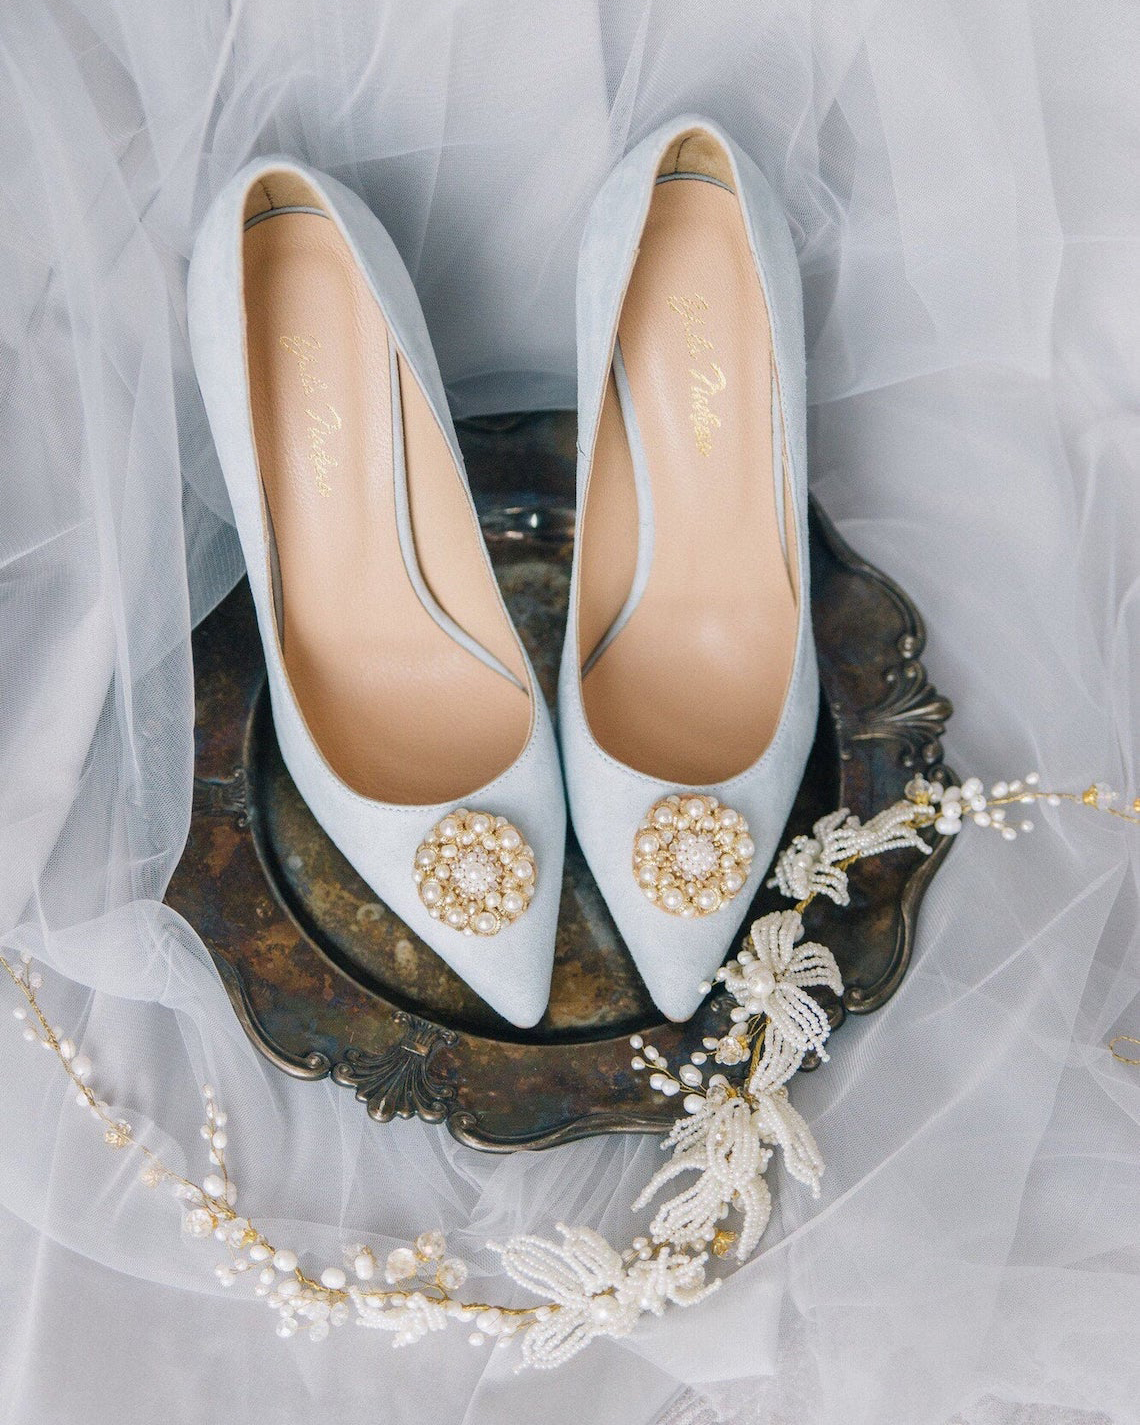 Yulia Nadeeva Blue Bridal Pumps Best Blue Bridal Shoes Heels Booties Sandals Flats for Your Something Blue Wedding Bridal Musings - 22 Đôi giày cô dâu màu xanh lam cho 'Thứ gì đó màu xanh lam' của bạn